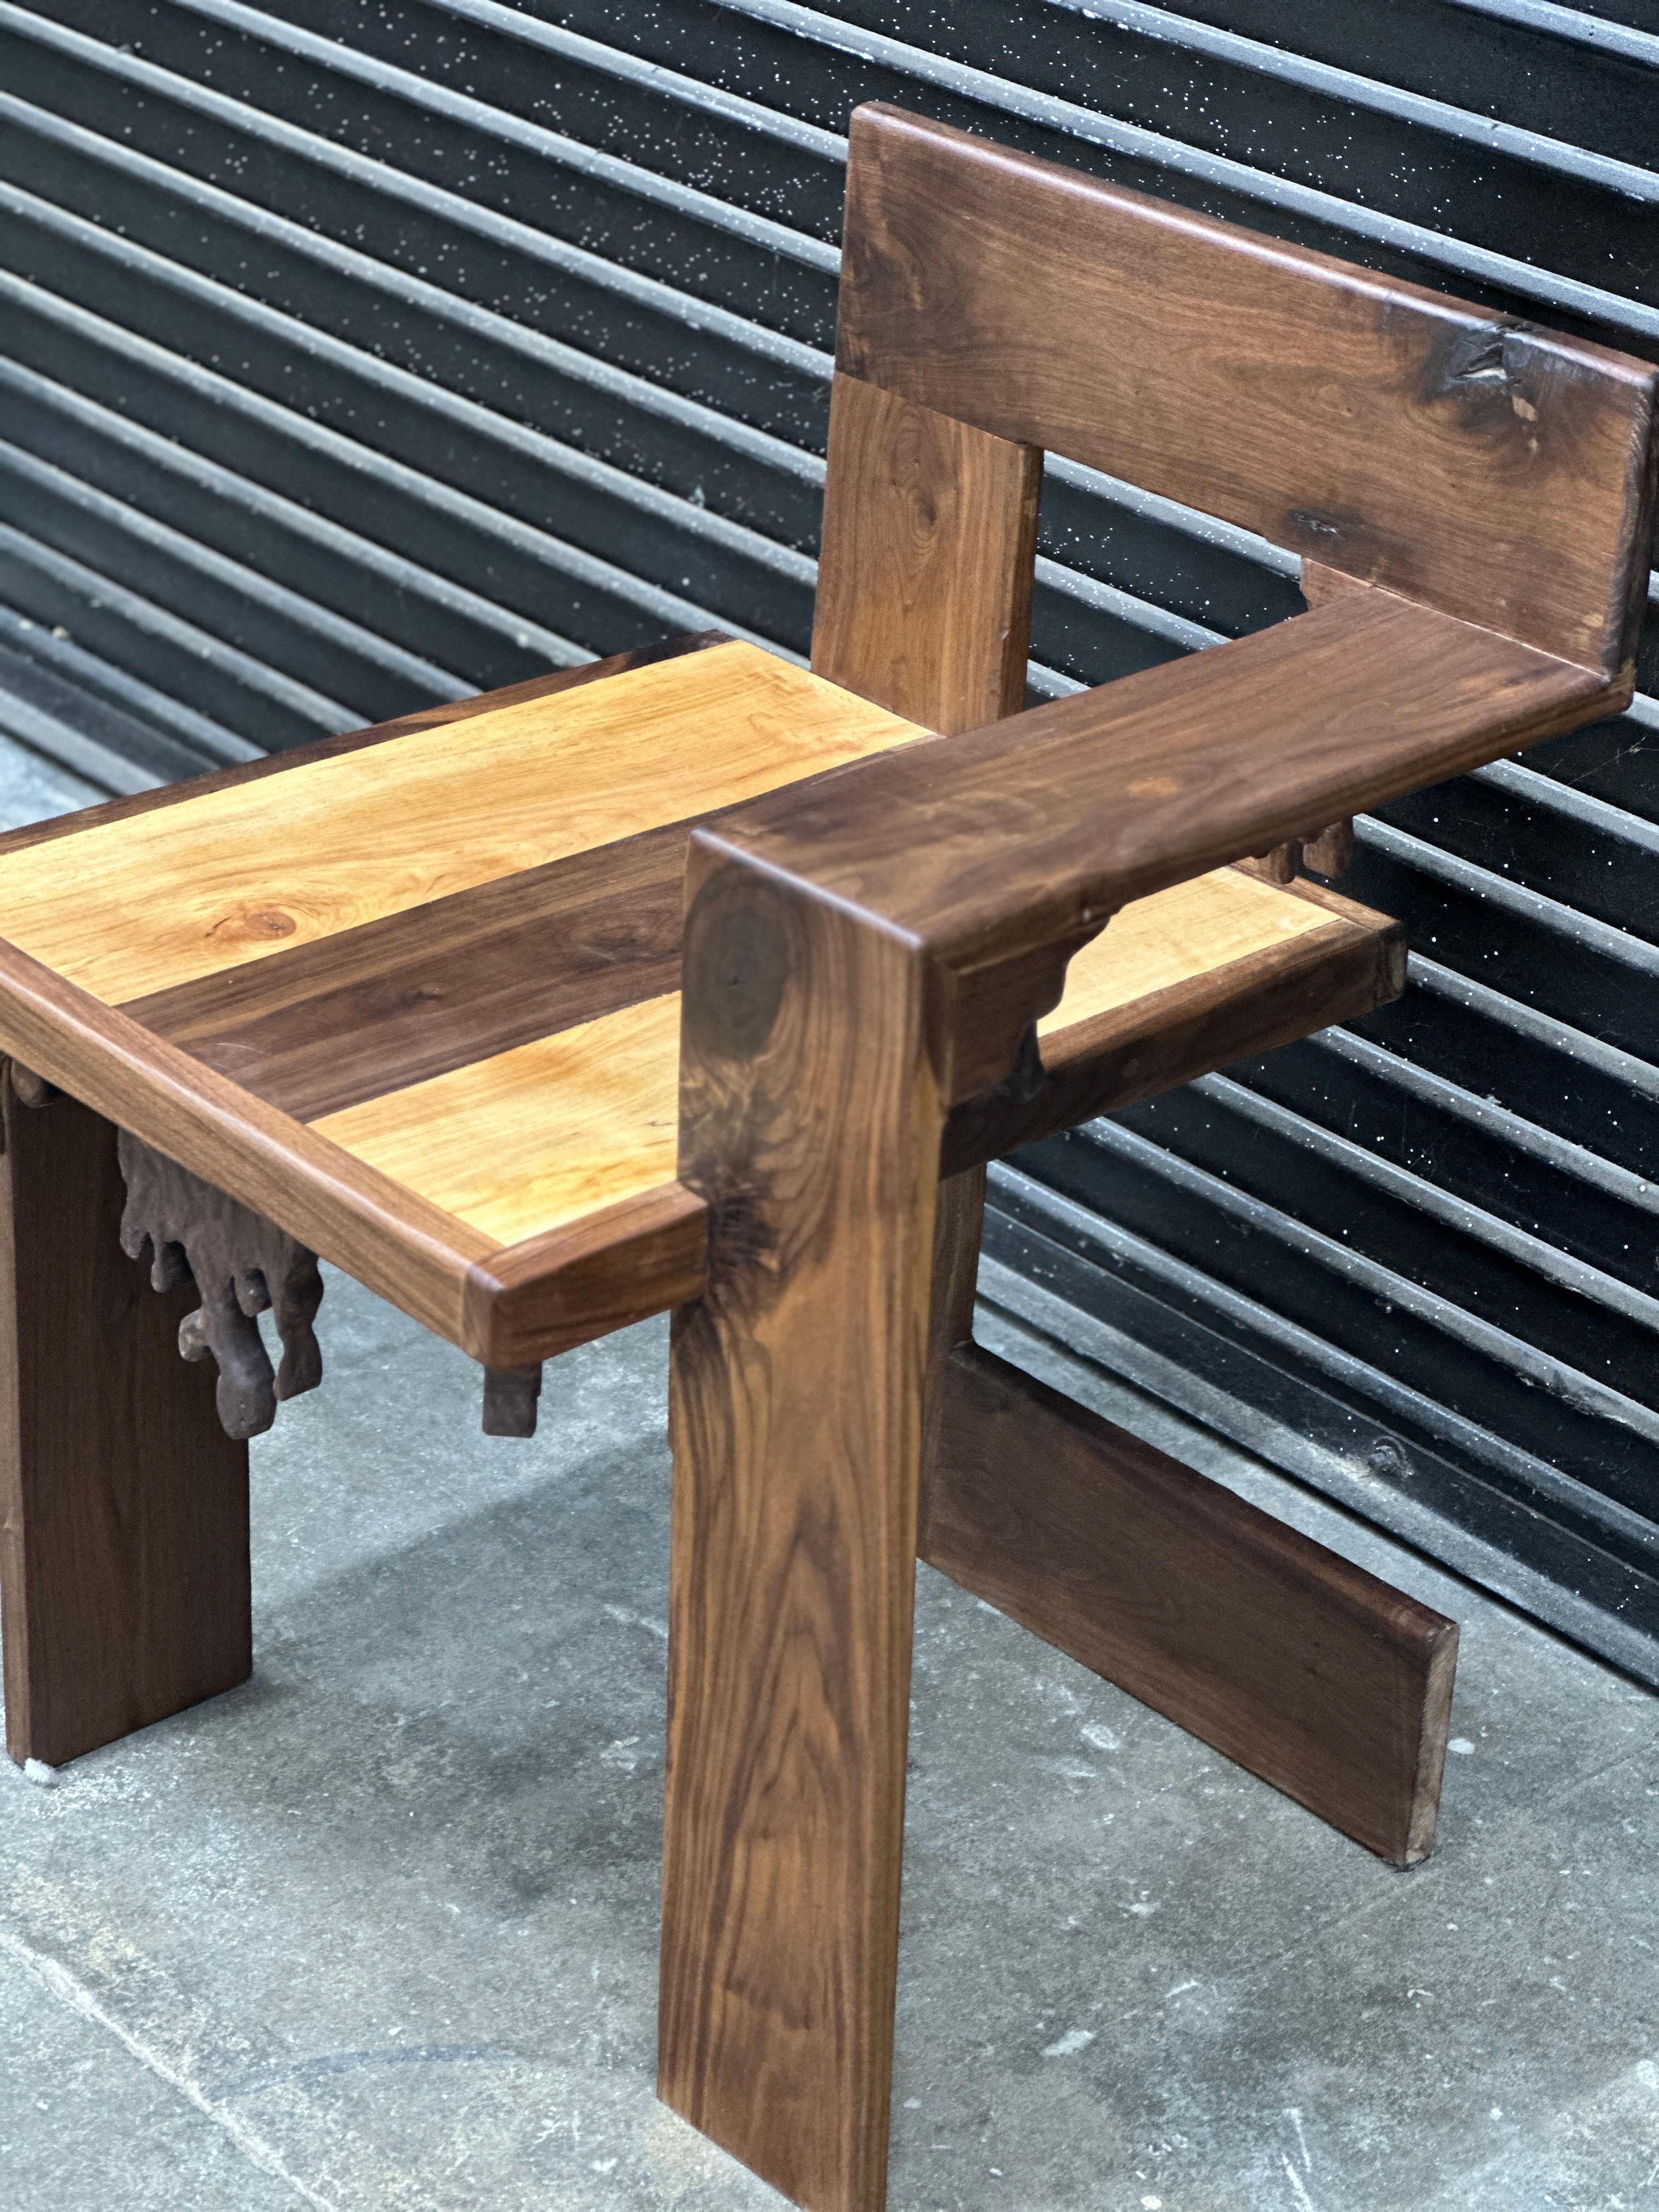 Moderne handwerkliche Umsetzung des Steltman-Stuhls von Gerrit Rietveldc. Dieser Stuhl ist mit verschiedenen Holzmaserungen und Oberflächen gestaltet. Der Stuhl ist extrem stabil und gut verarbeitet. Mit dem beliebten 